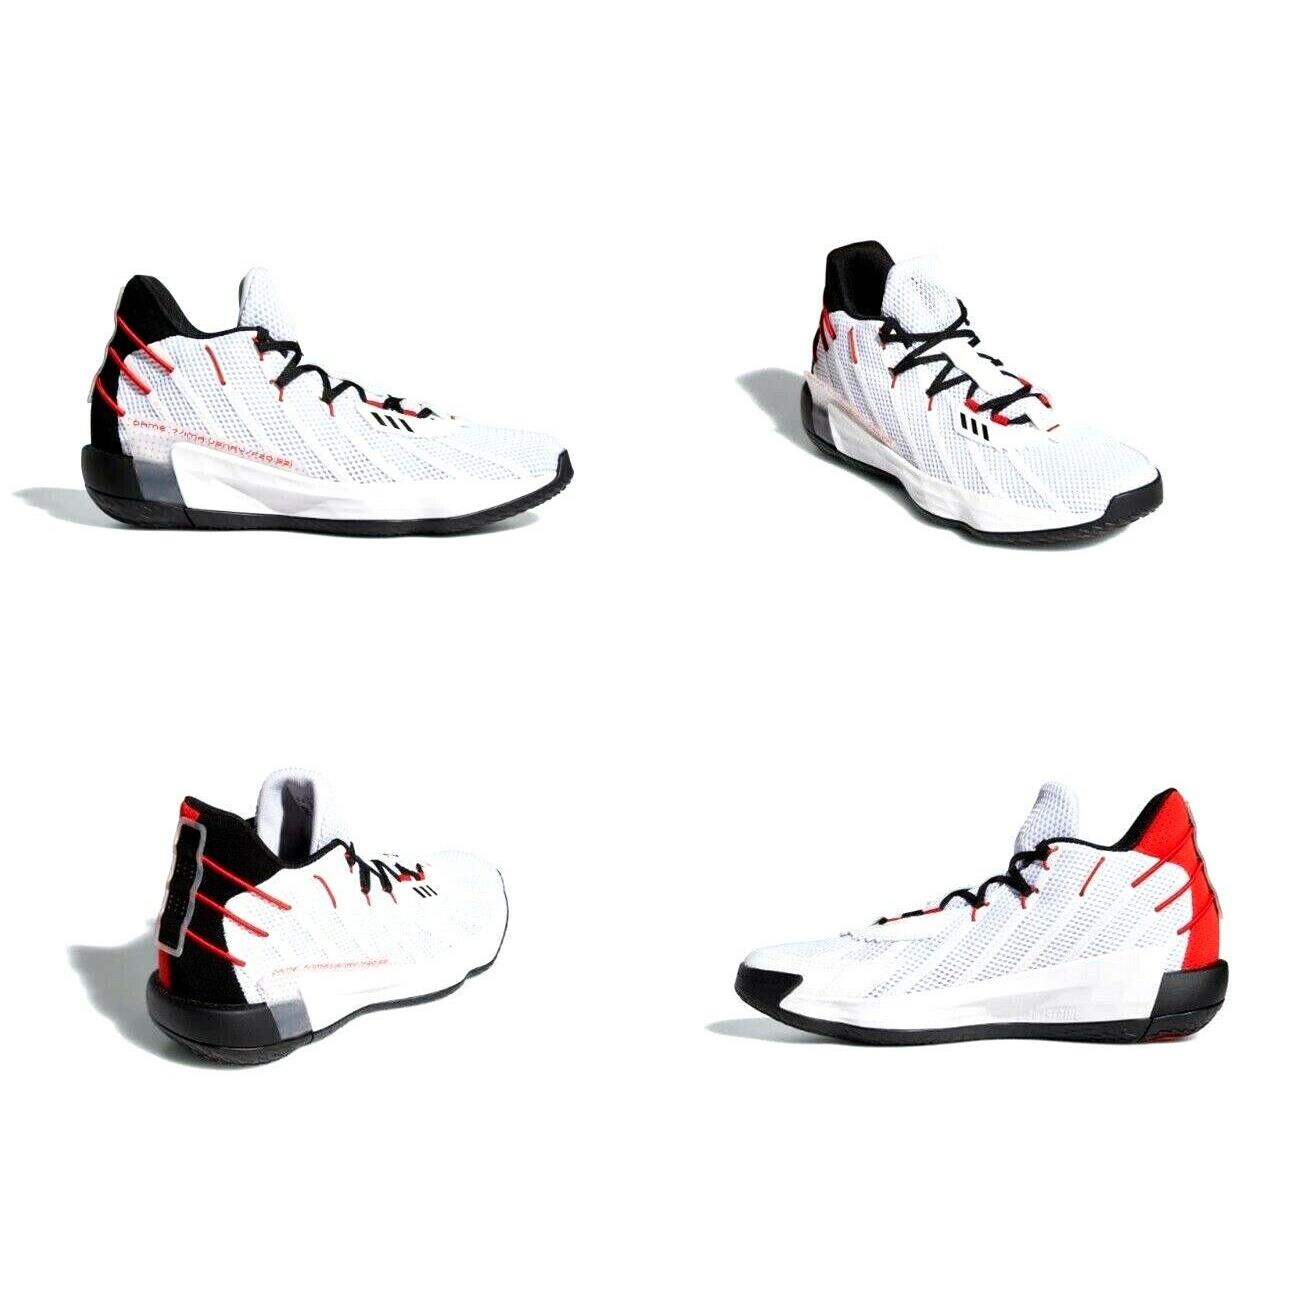 Adidas Damian Lillard Dame 7 Basketball Shoe White Black Red Size 11.5 US H04387